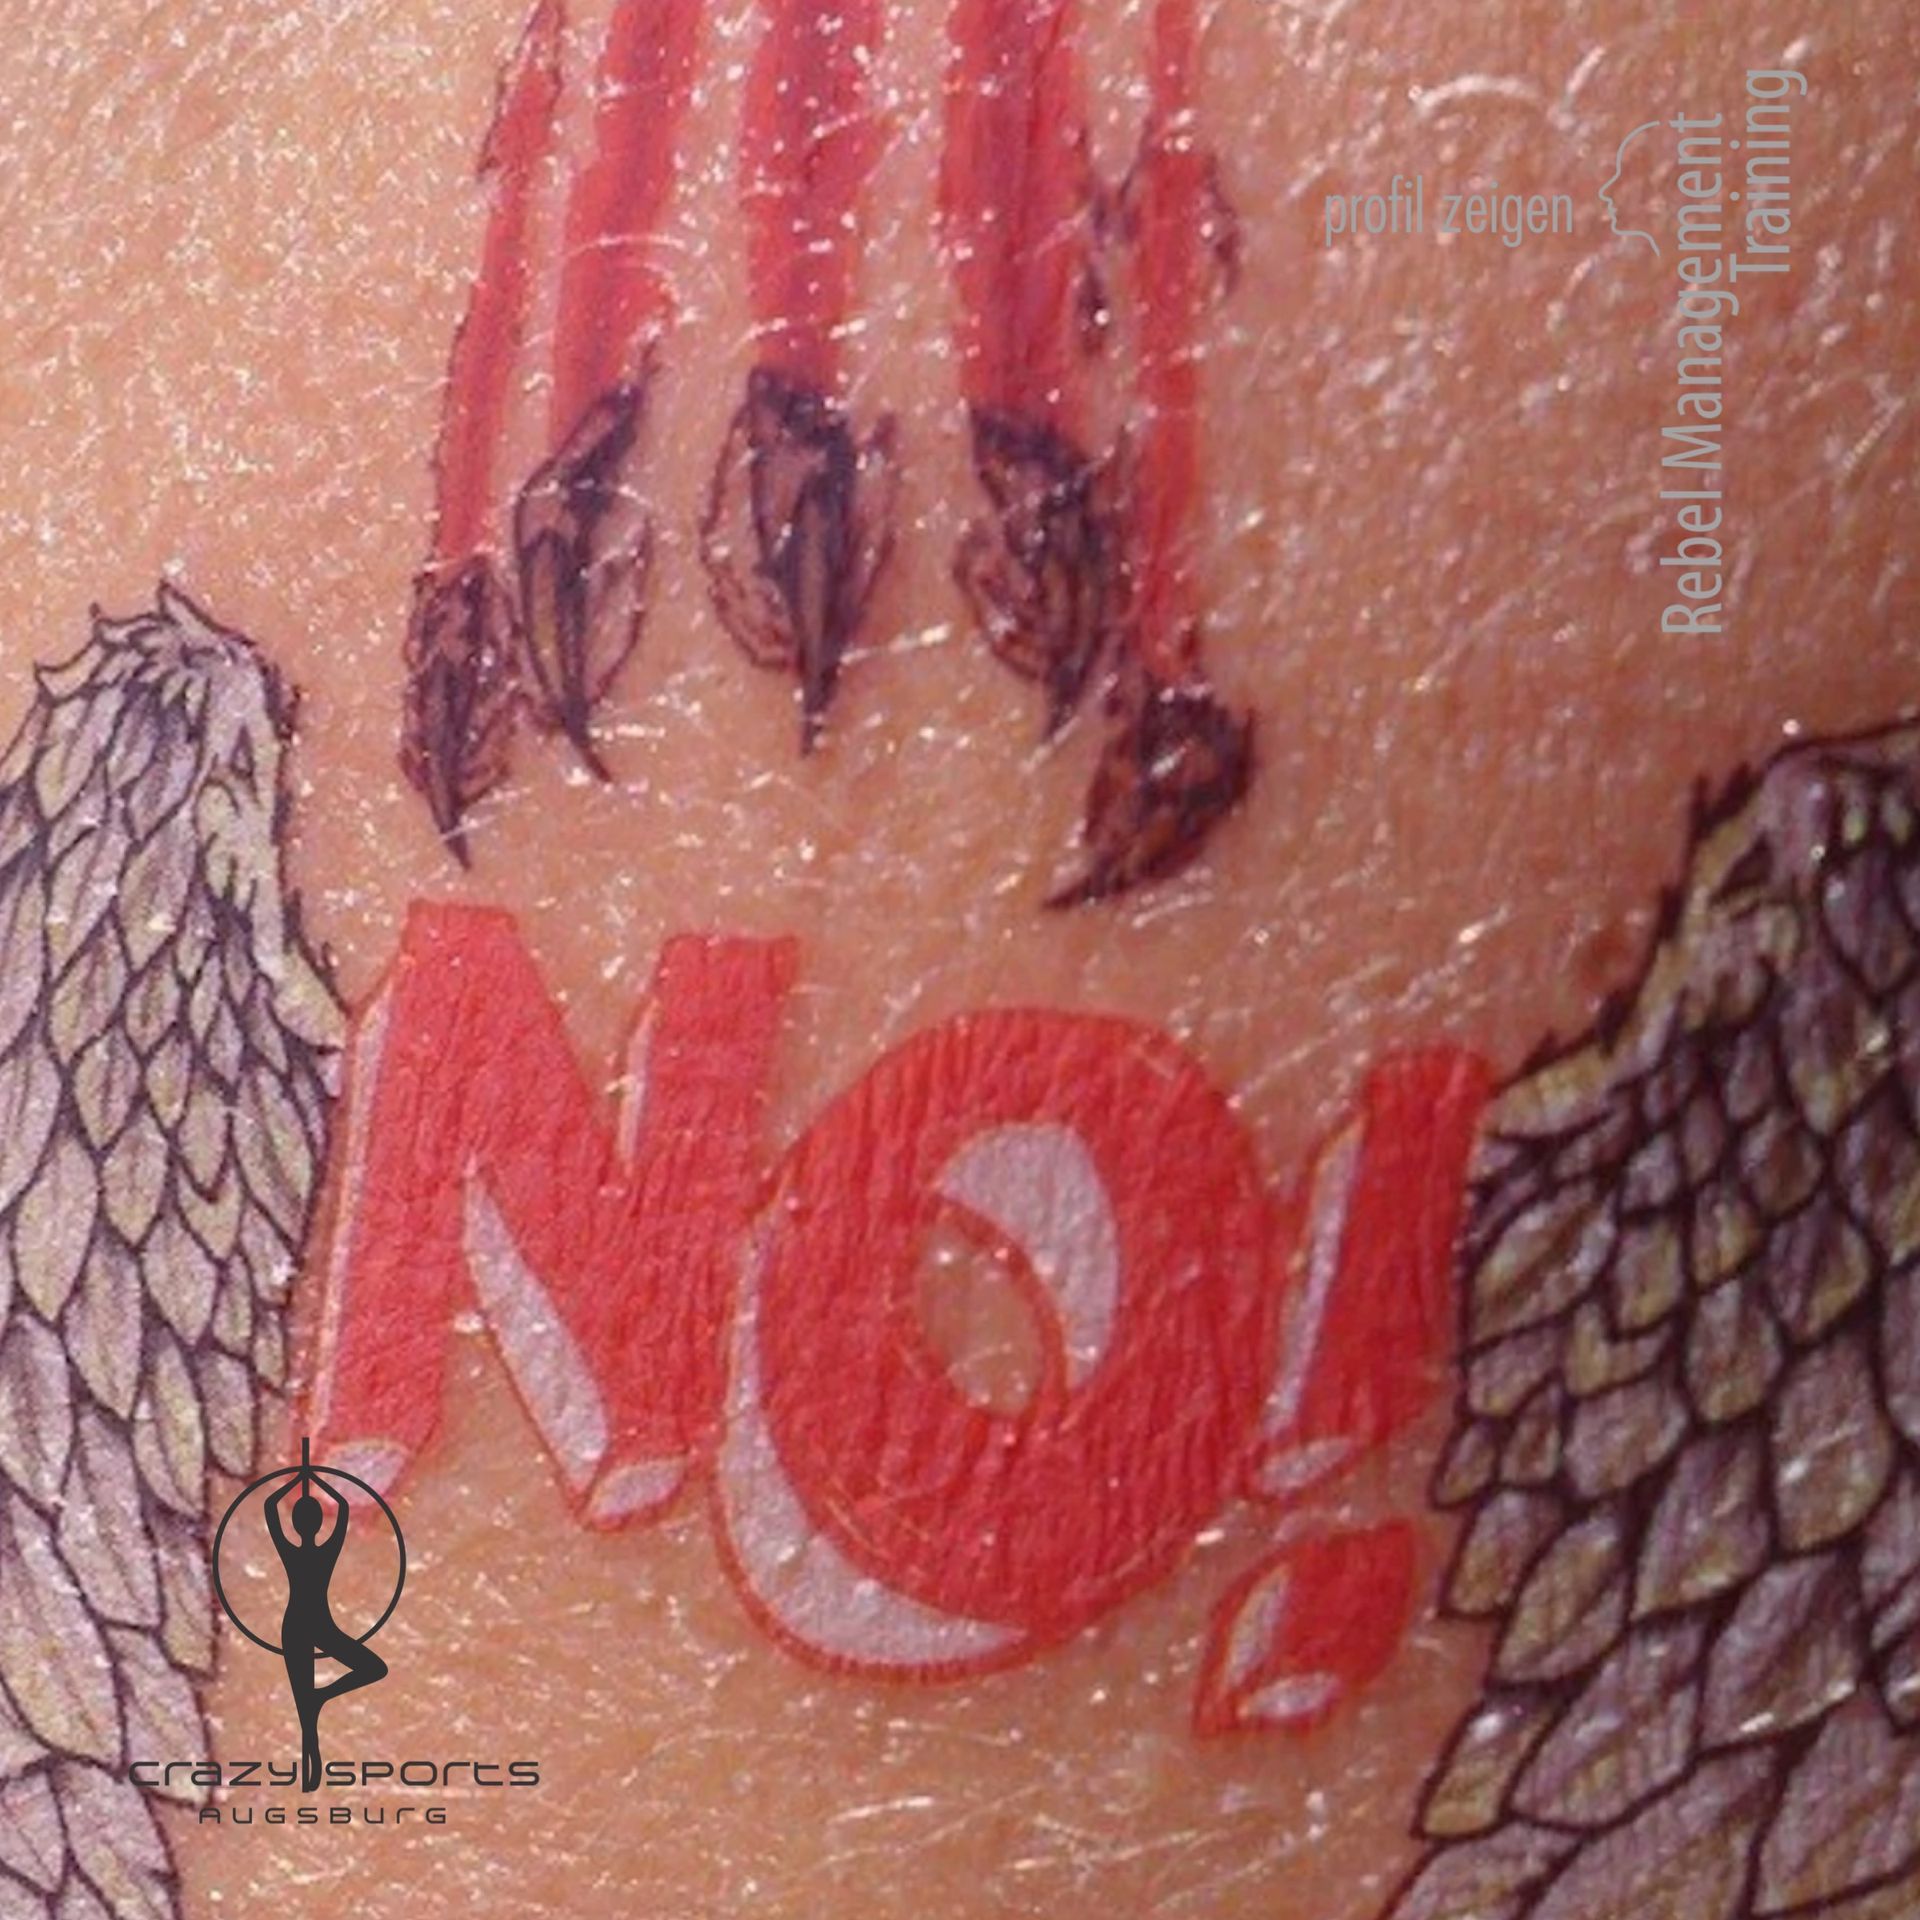 NO - Tattoo gegen sexuelle Belästigung